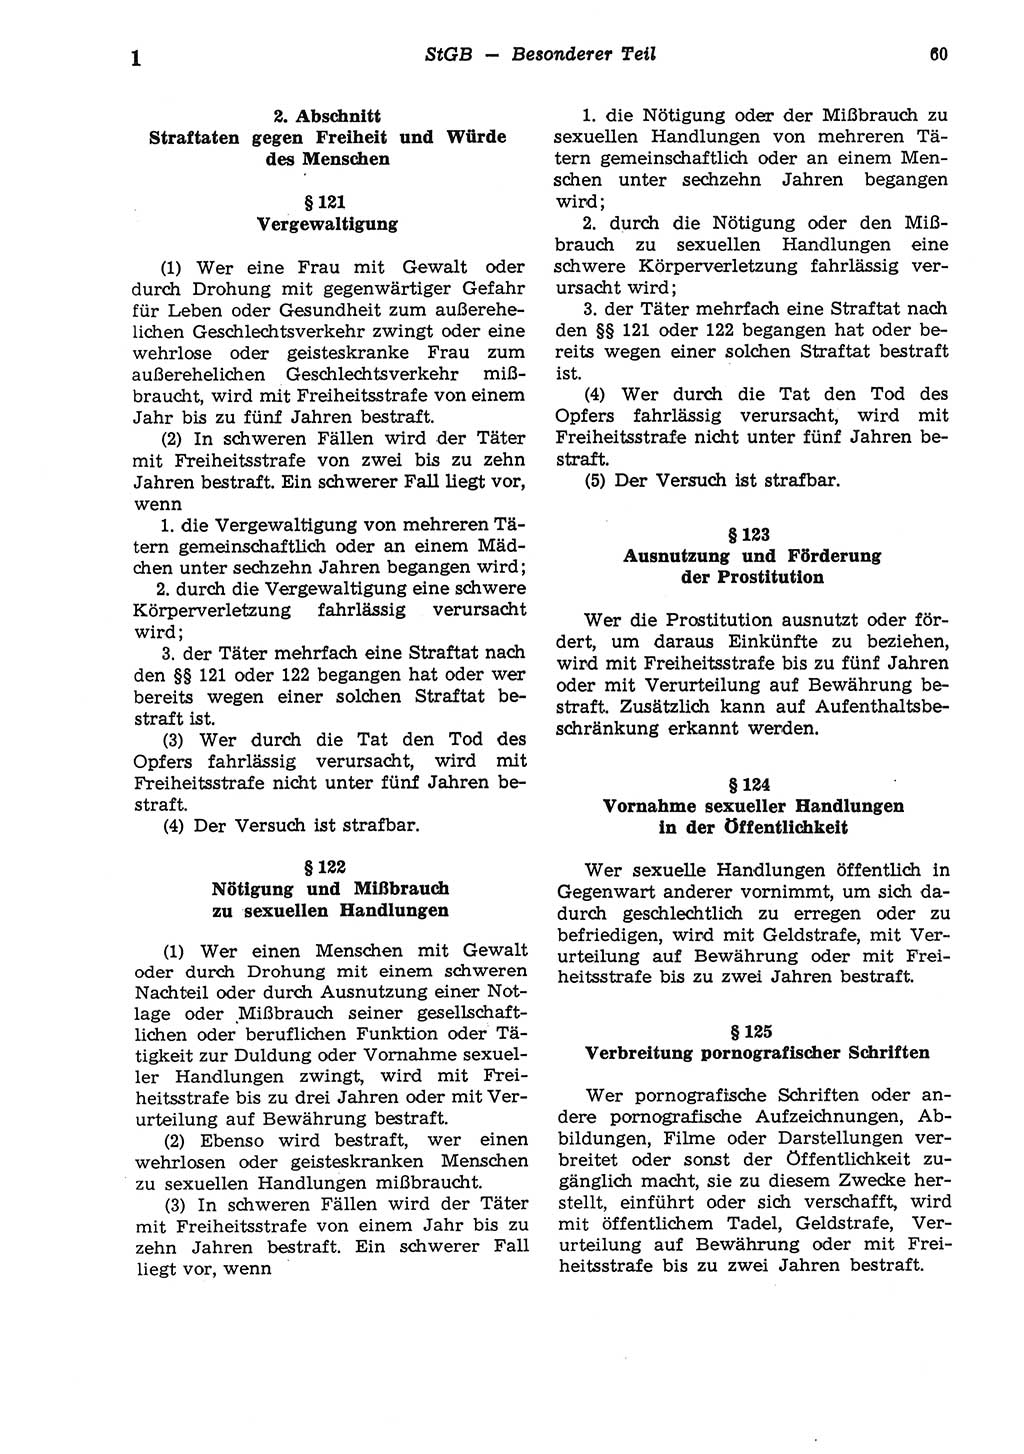 Strafgesetzbuch (StGB) der Deutschen Demokratischen Republik (DDR) und angrenzende Gesetze und Bestimmungen 1975, Seite 60 (StGB DDR Ges. Best. 1975, S. 60)